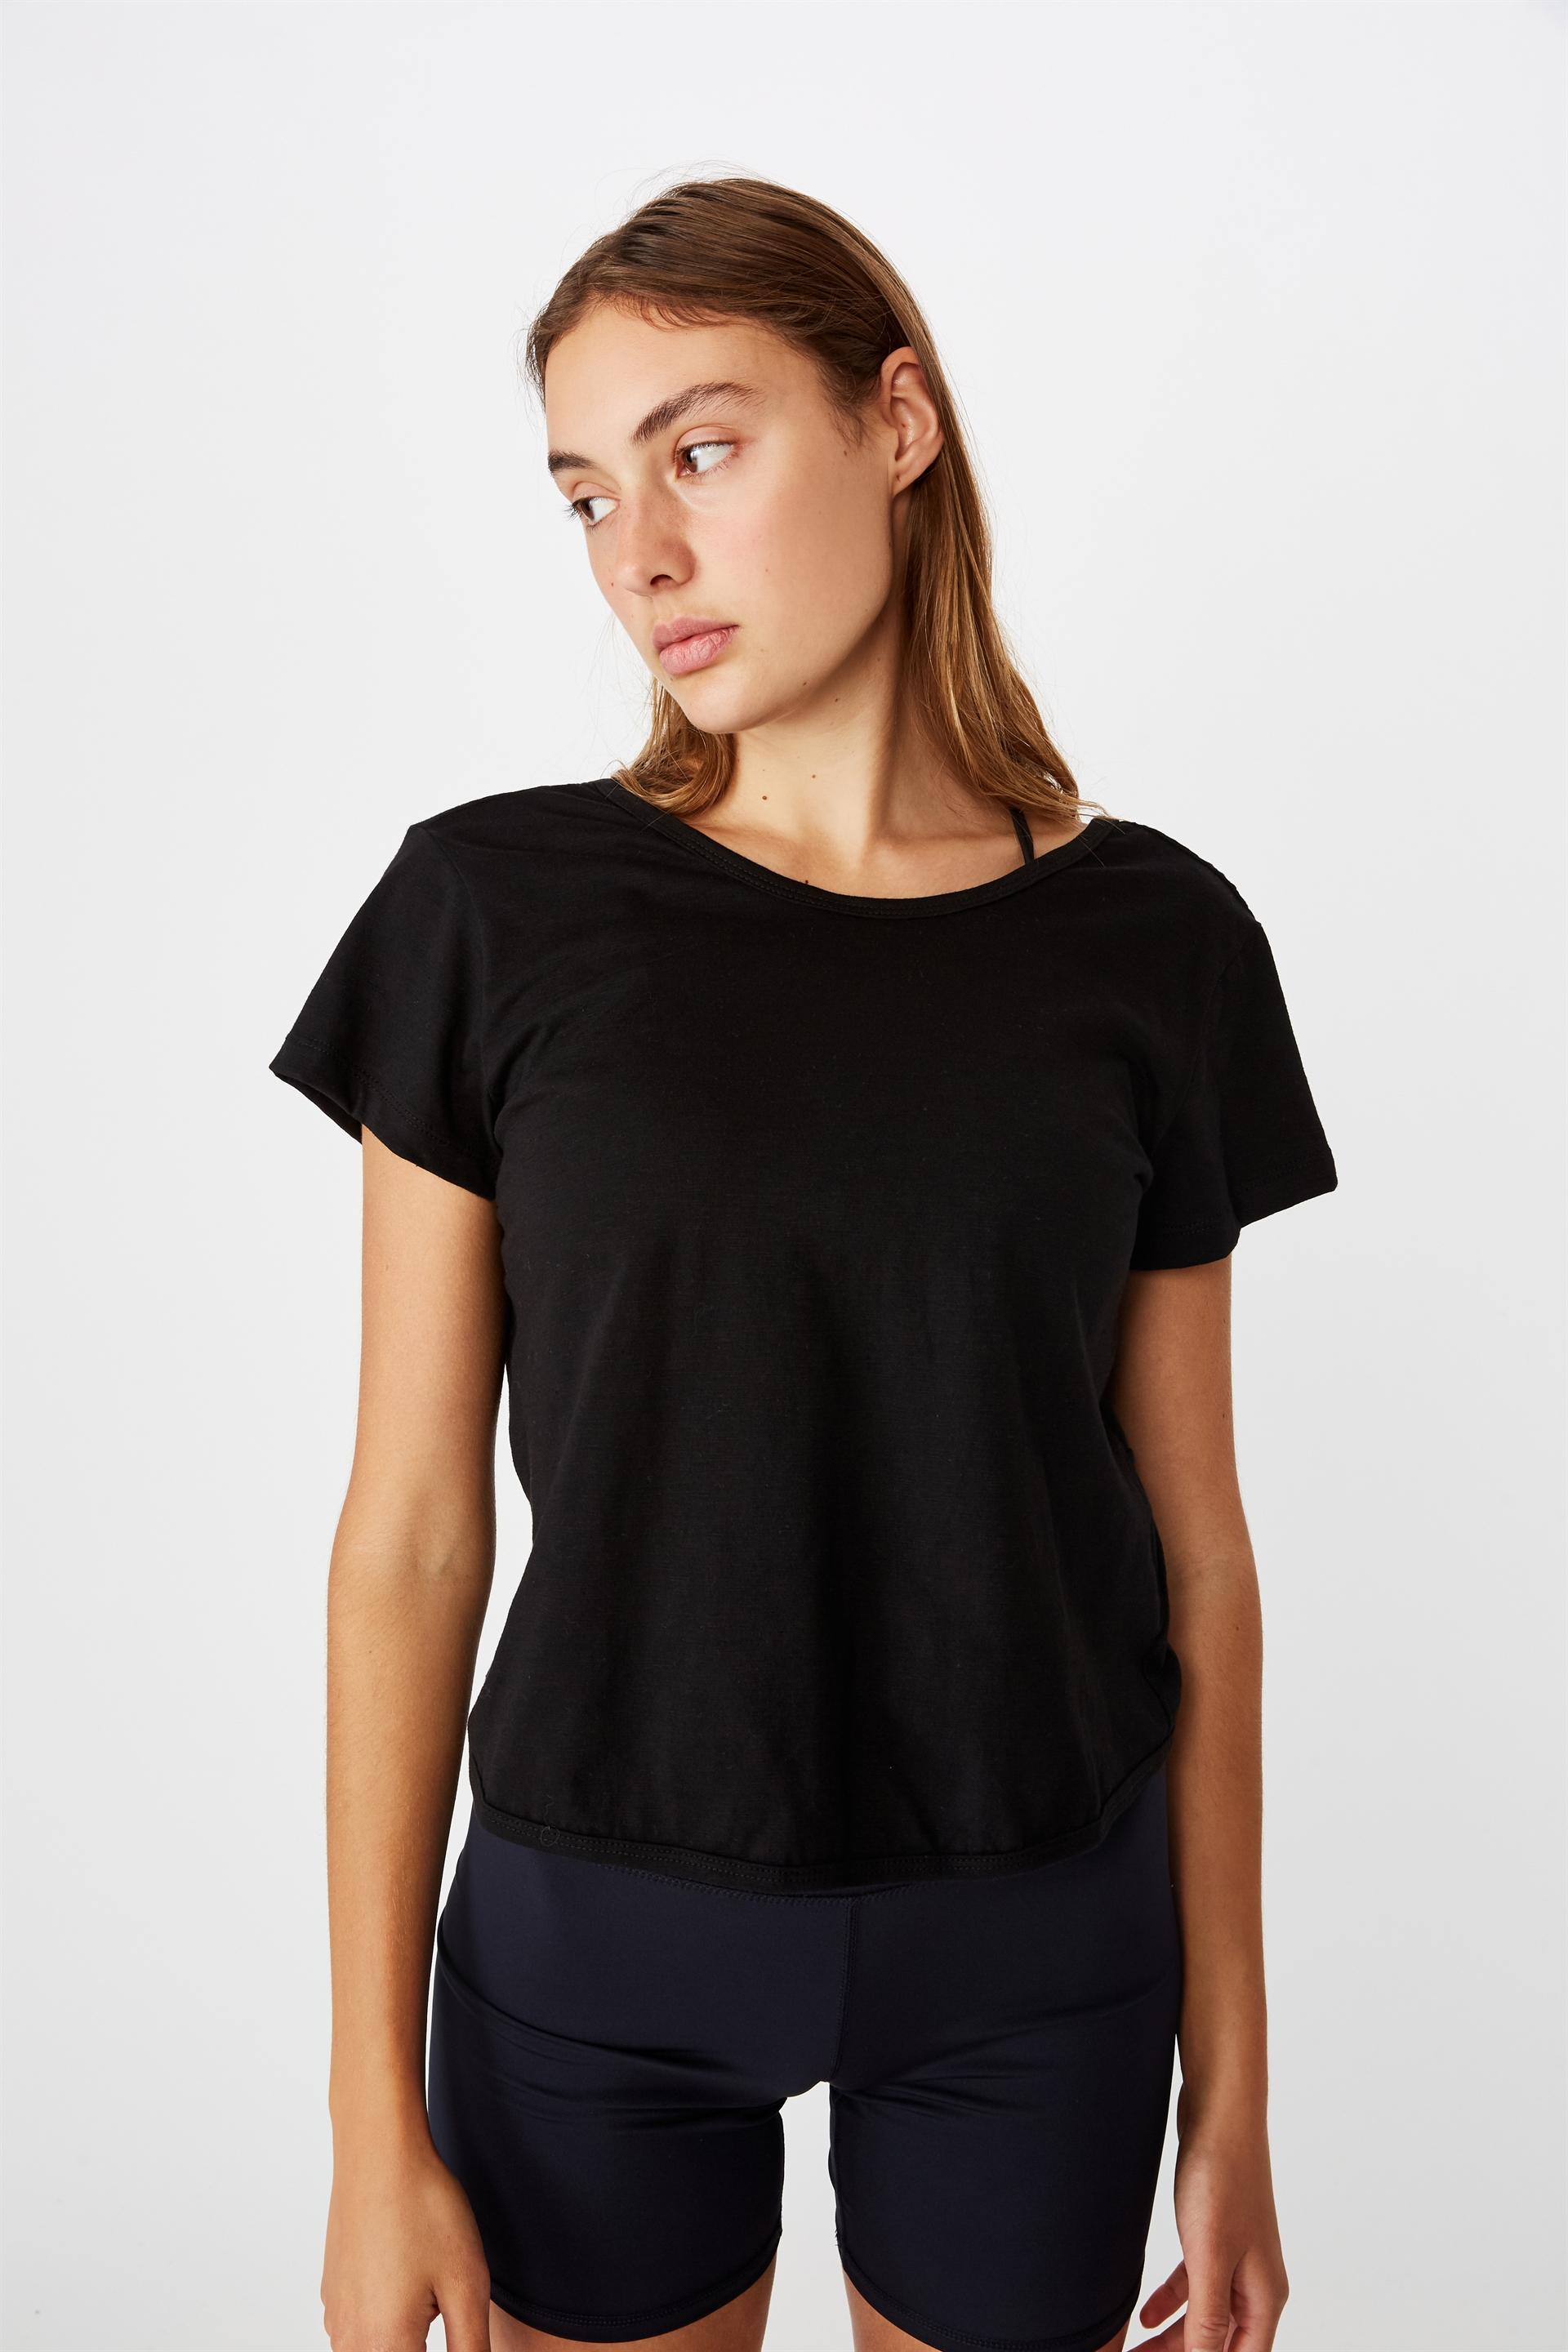 Lifestyle twist back tshirt -black Cotton On T-Shirts | Superbalist.com